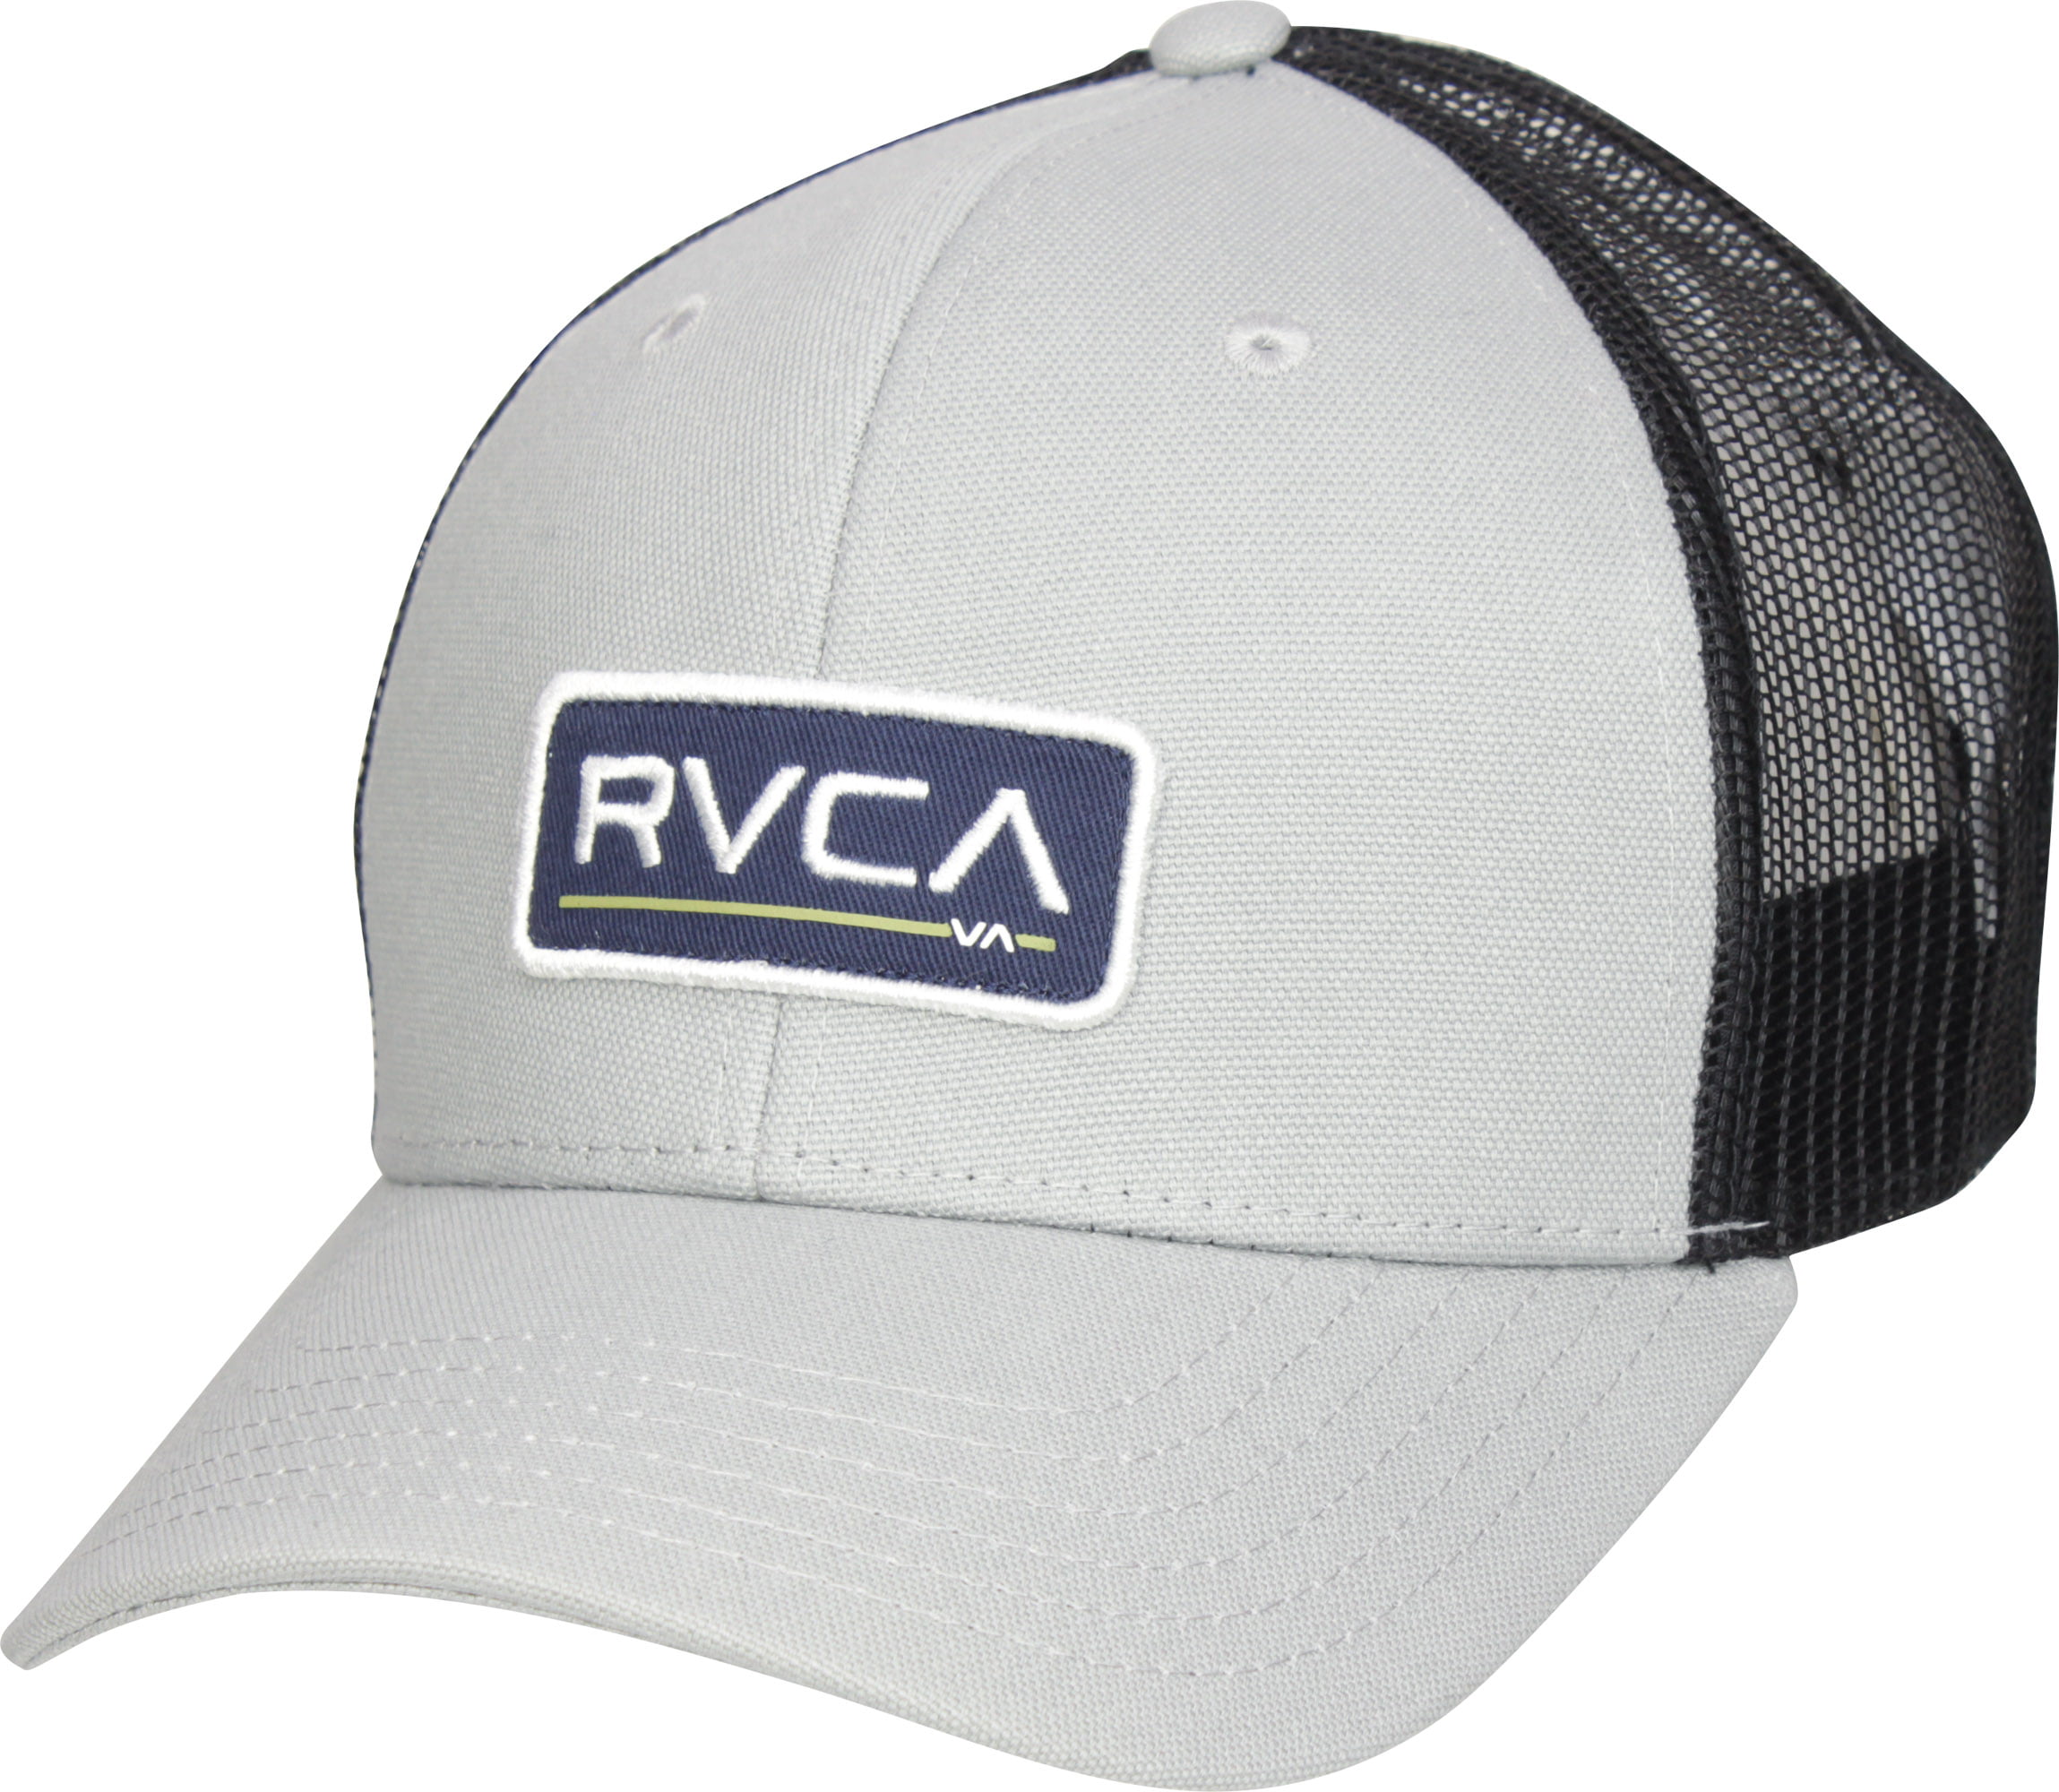 RVCA Mens Ticket Trucker Curved Bill Hat